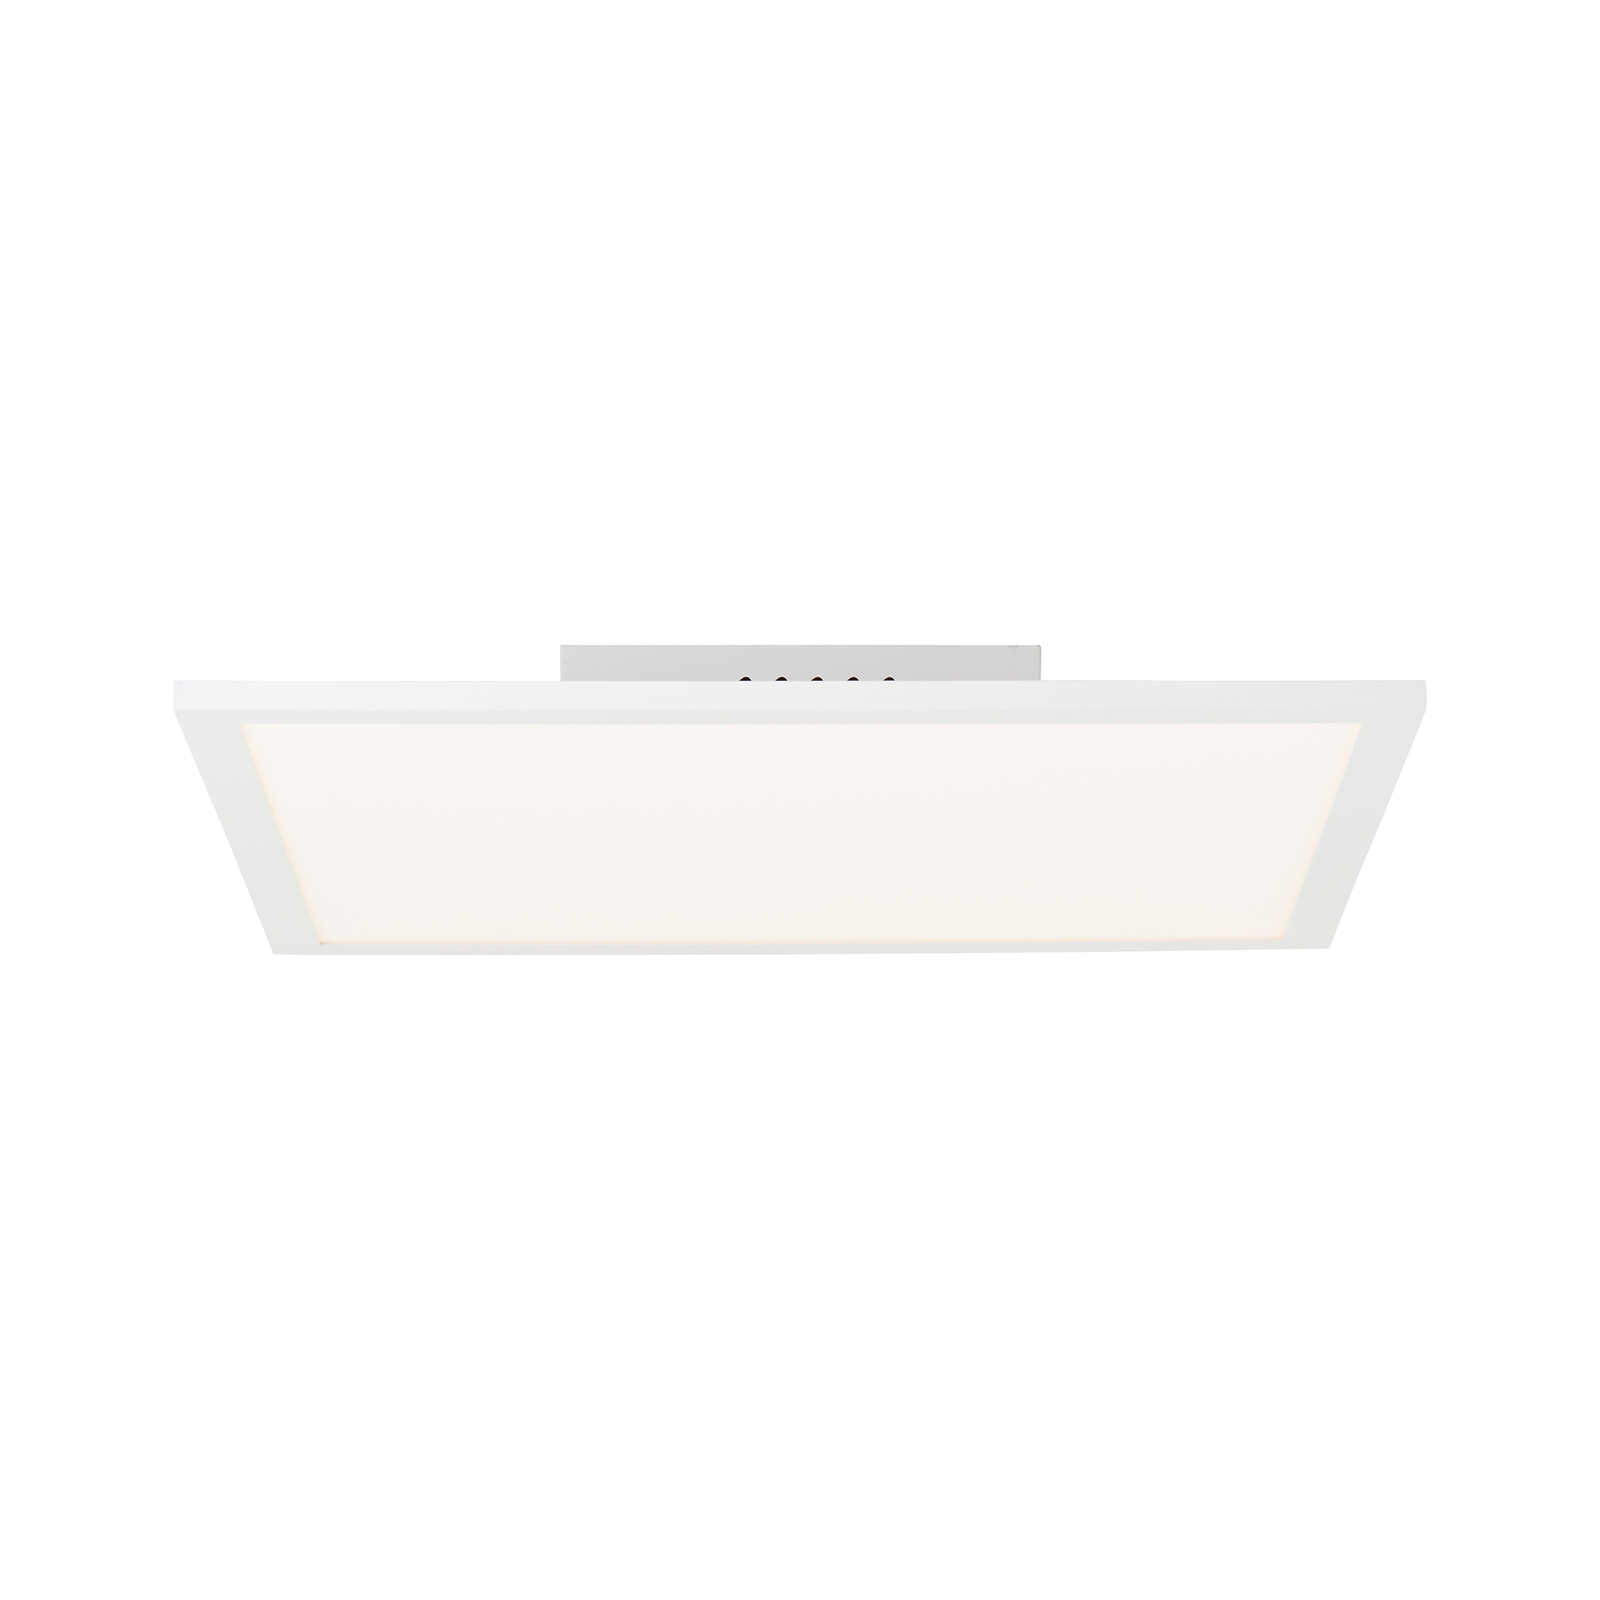 Plastic ceiling light - Jolien 1 - White
